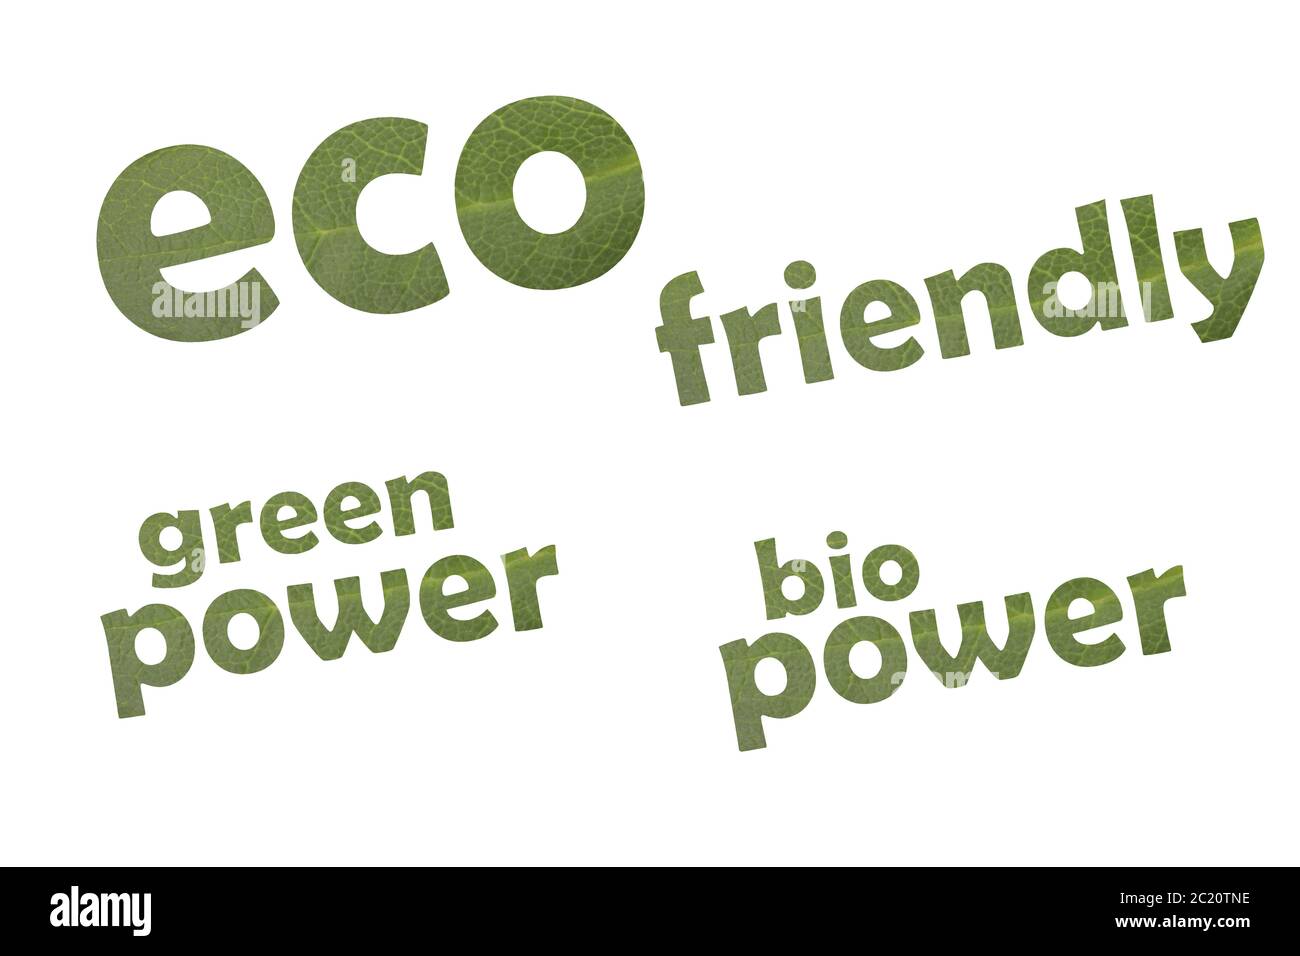 La collection de mots-clés eco friendly, l'énergie verte et de l'alimentation bio sur une feuille verte Banque D'Images